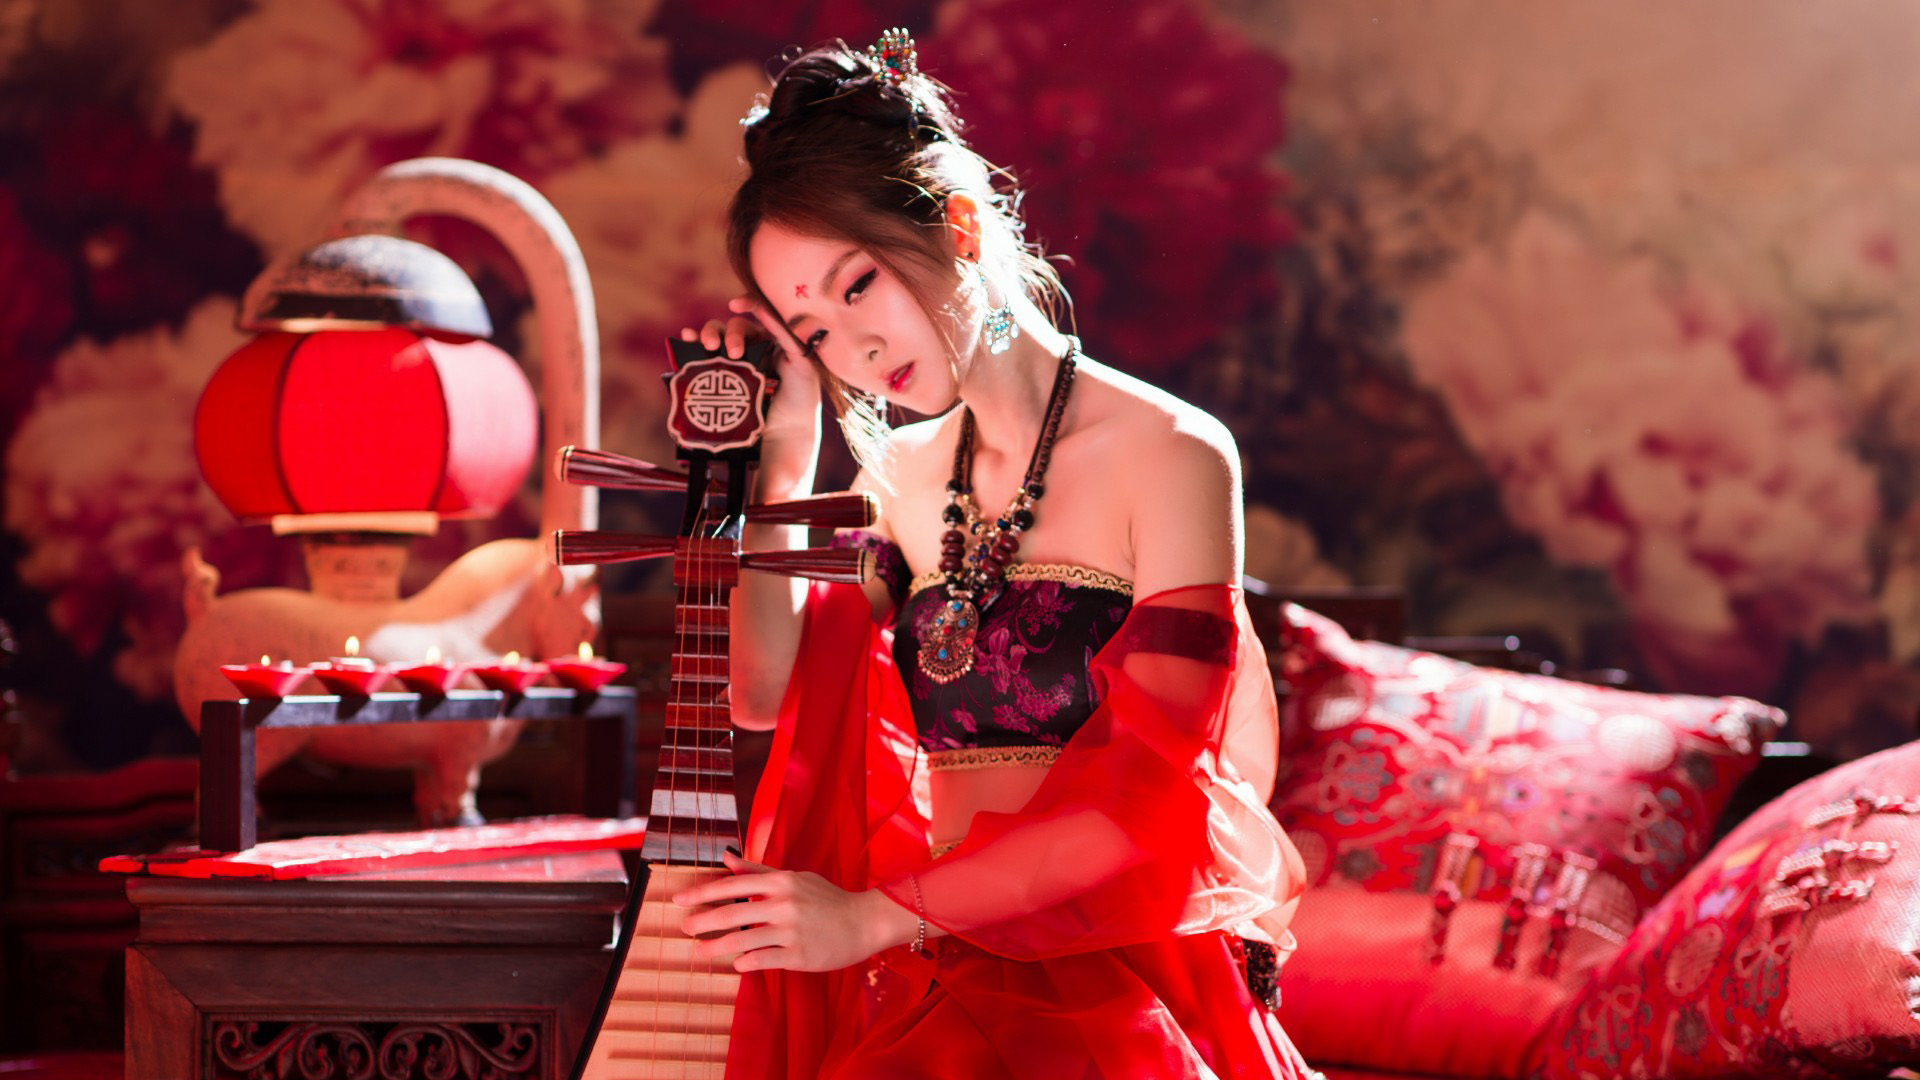 古典乐器,美女,红装,中国风,古风,古装美女桌面壁纸